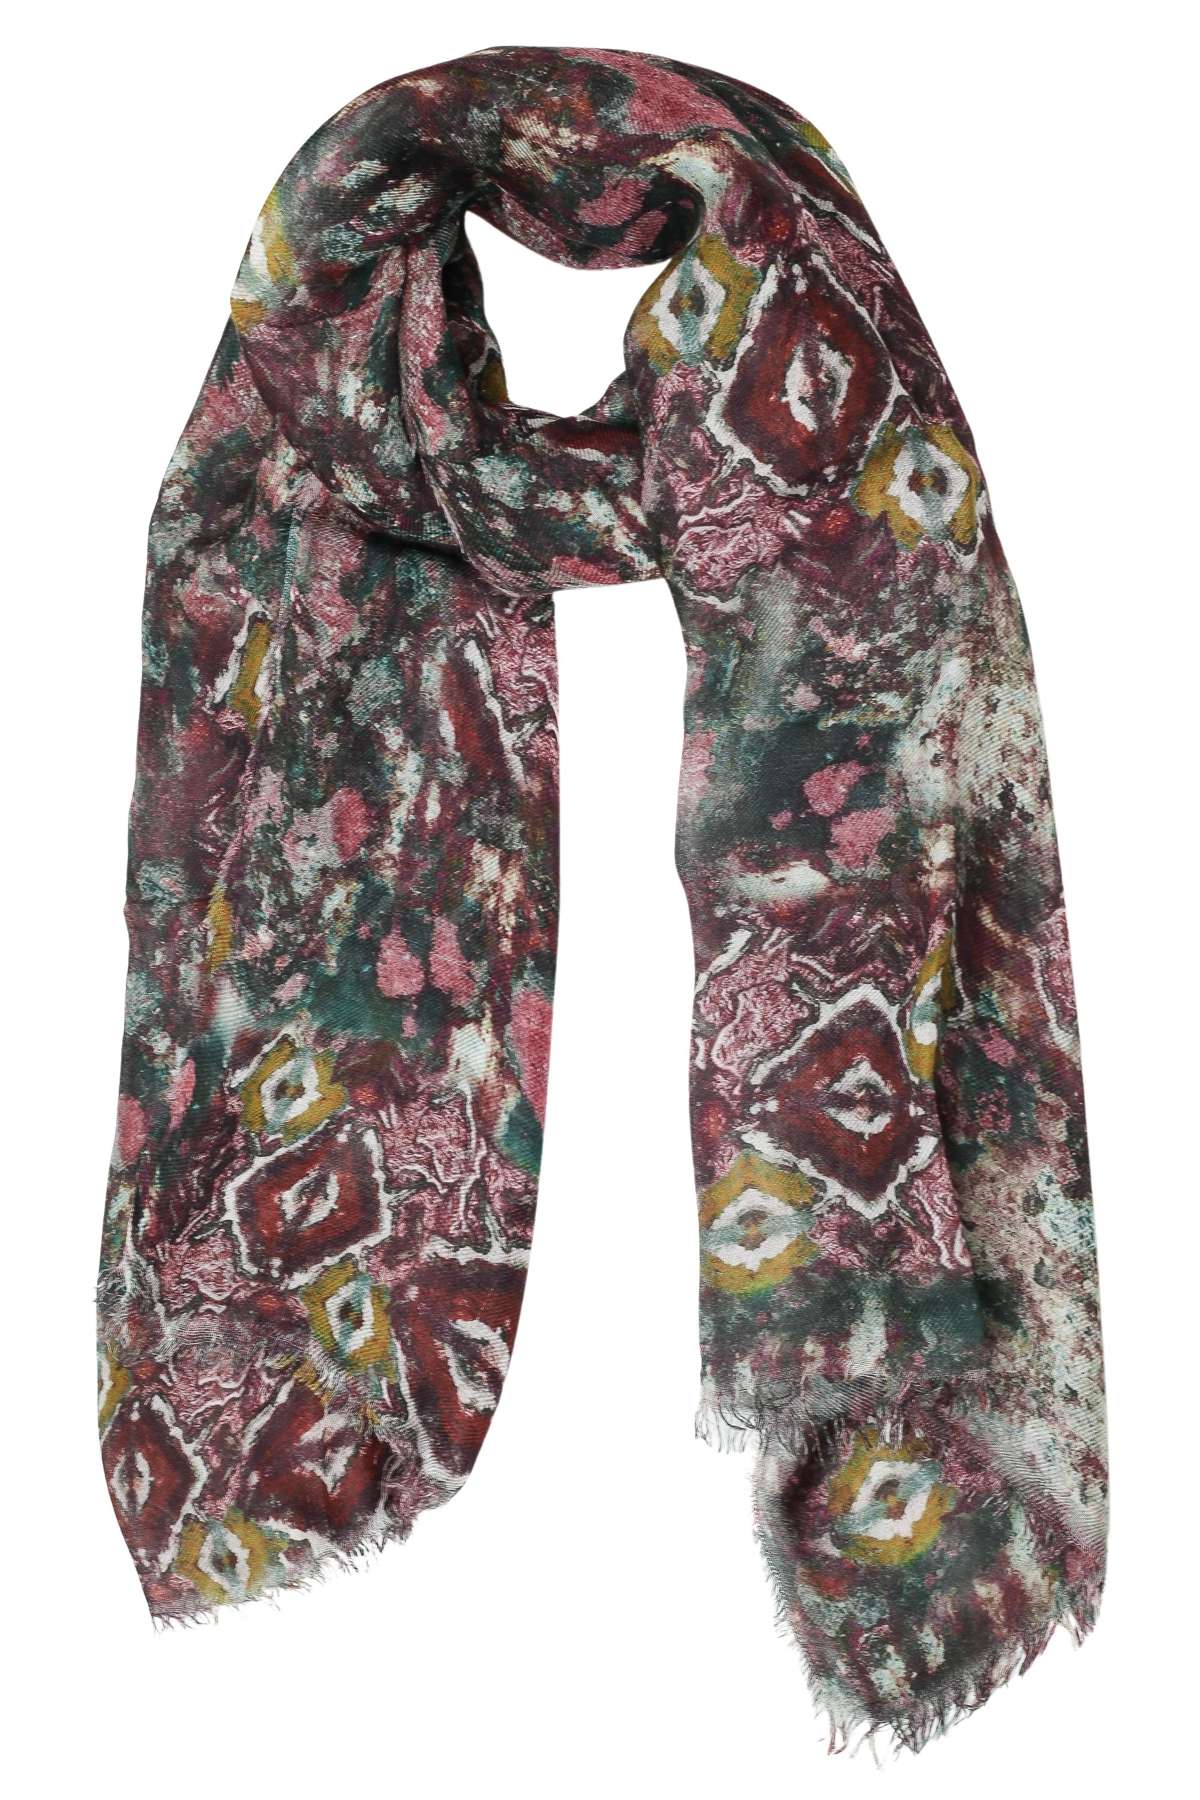 Модный шарф (1 штука) из натурального материала, производство Италия.